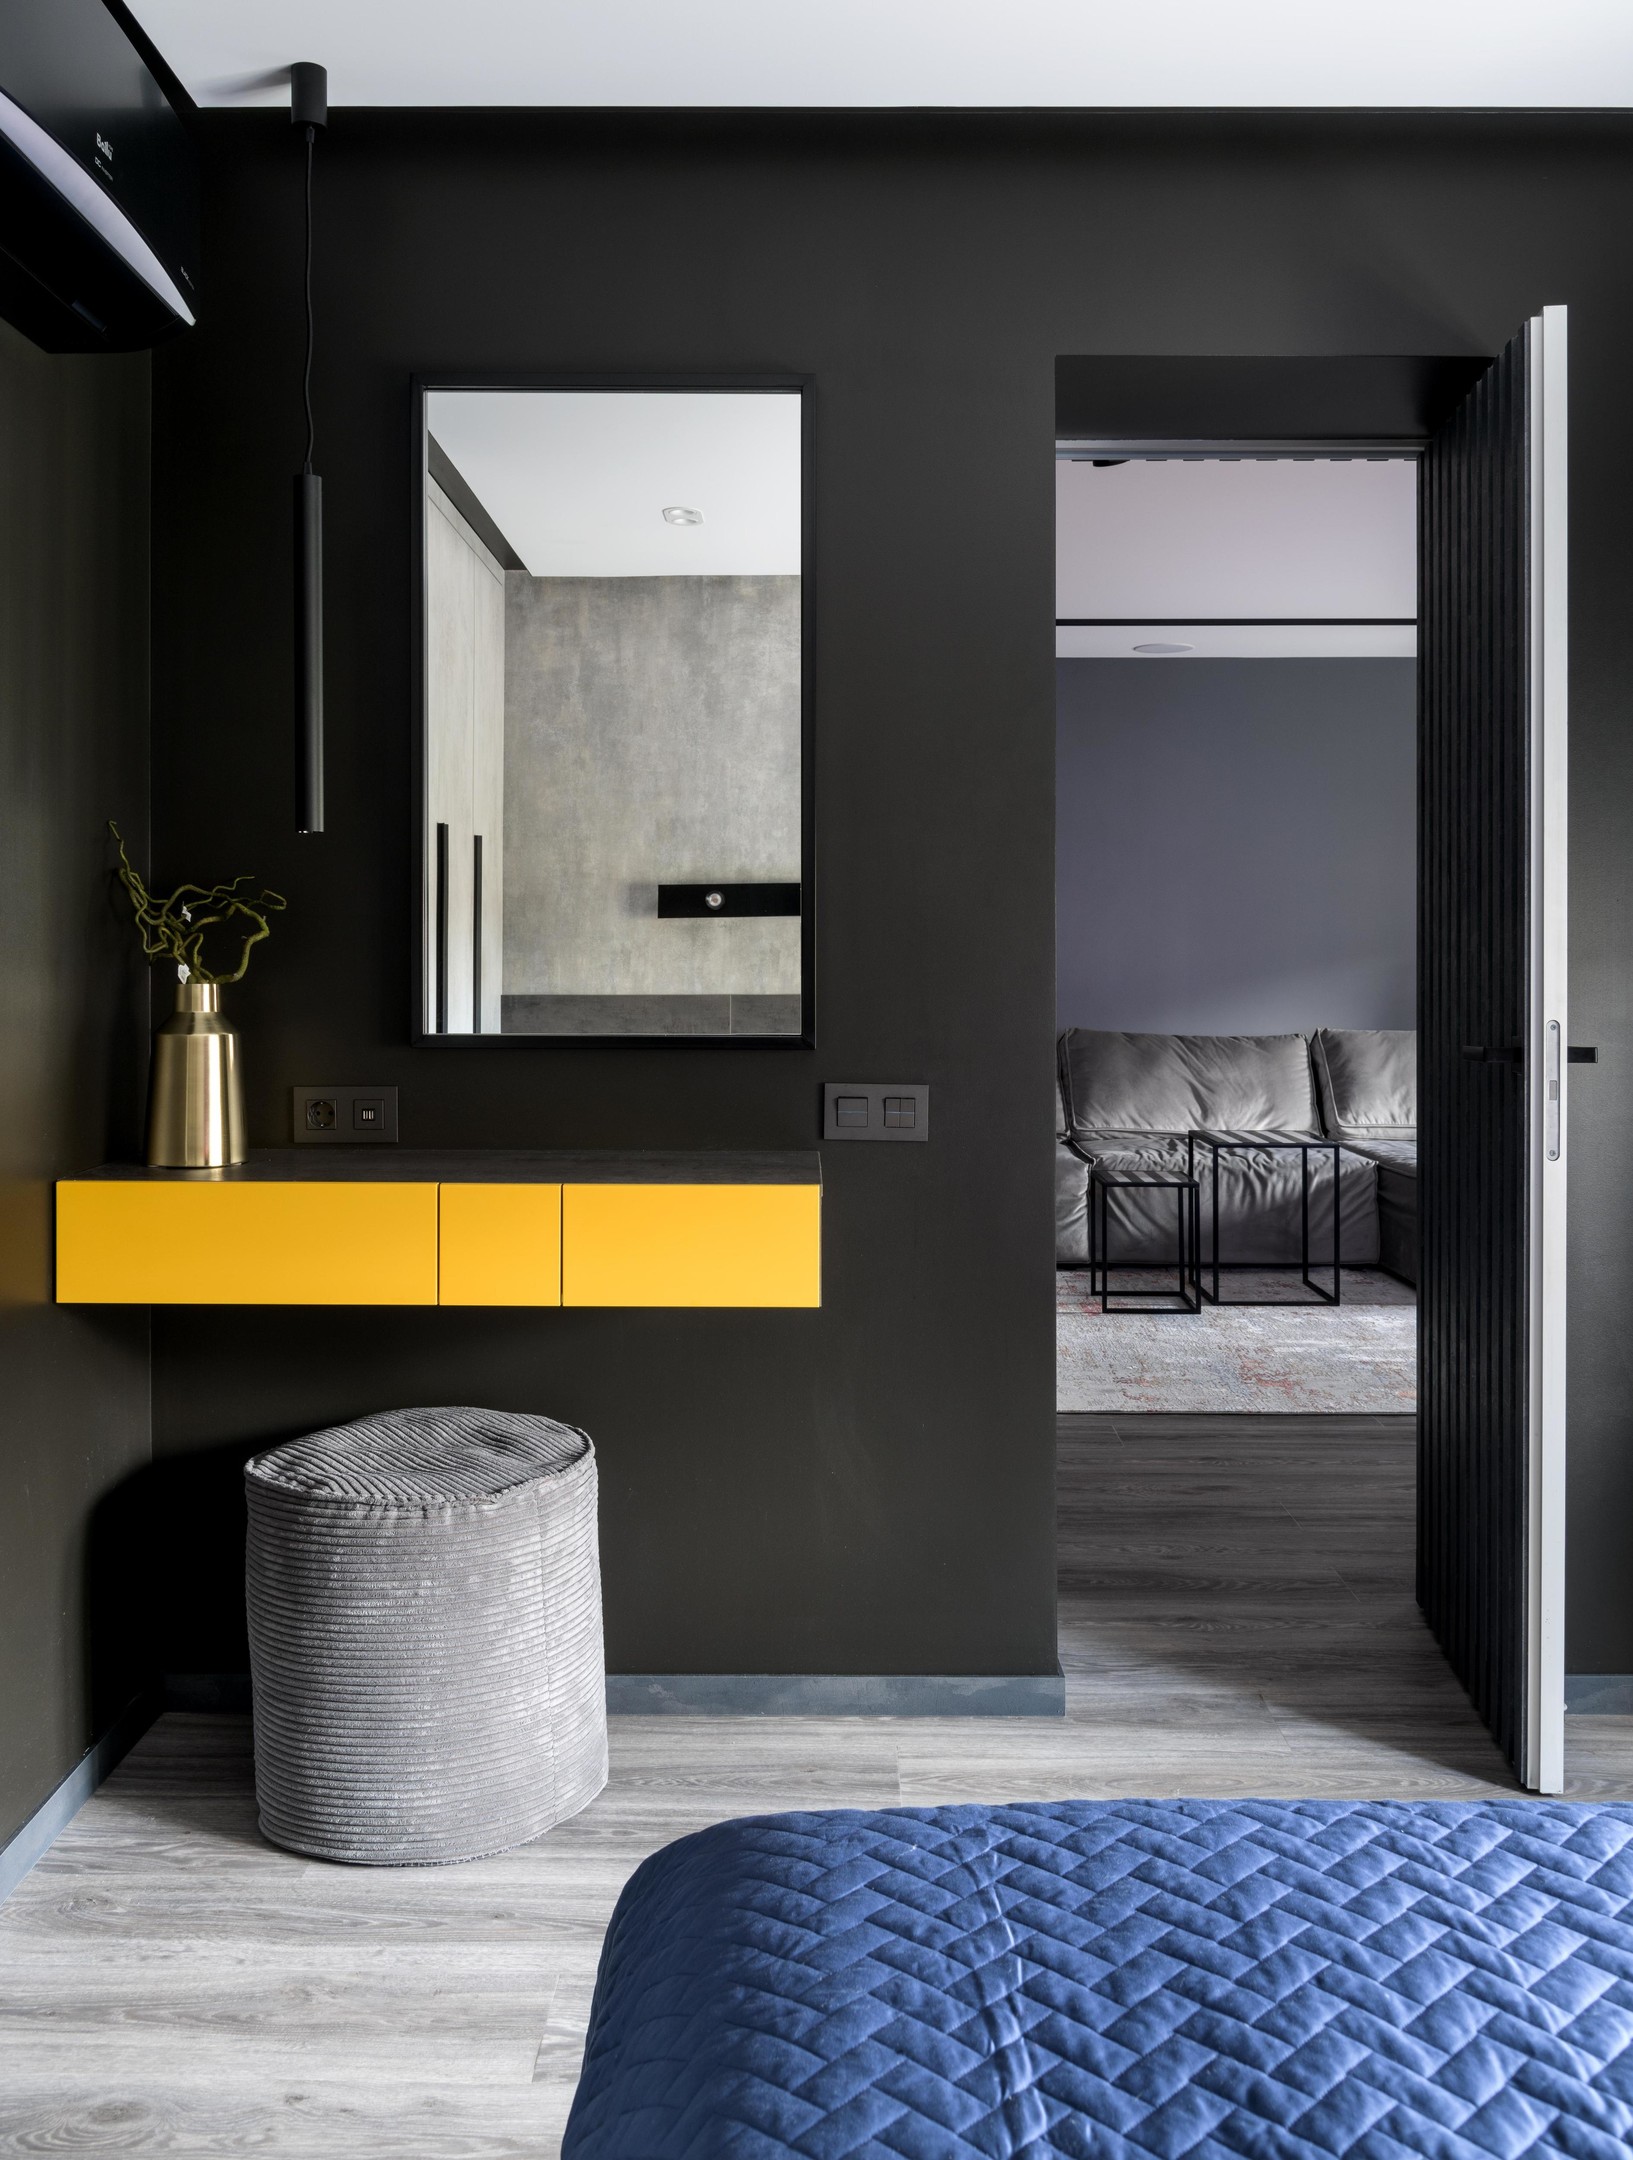 Thay vì chiếc bàn phấn chiếm khá nhiều diện tích, NTK nội thất chỉ bổ sung một chiếc bàn kết hợp tủ lưu trữ gắn tường với sắc vàng nổi bật trên phông nền đen bí ẩn.